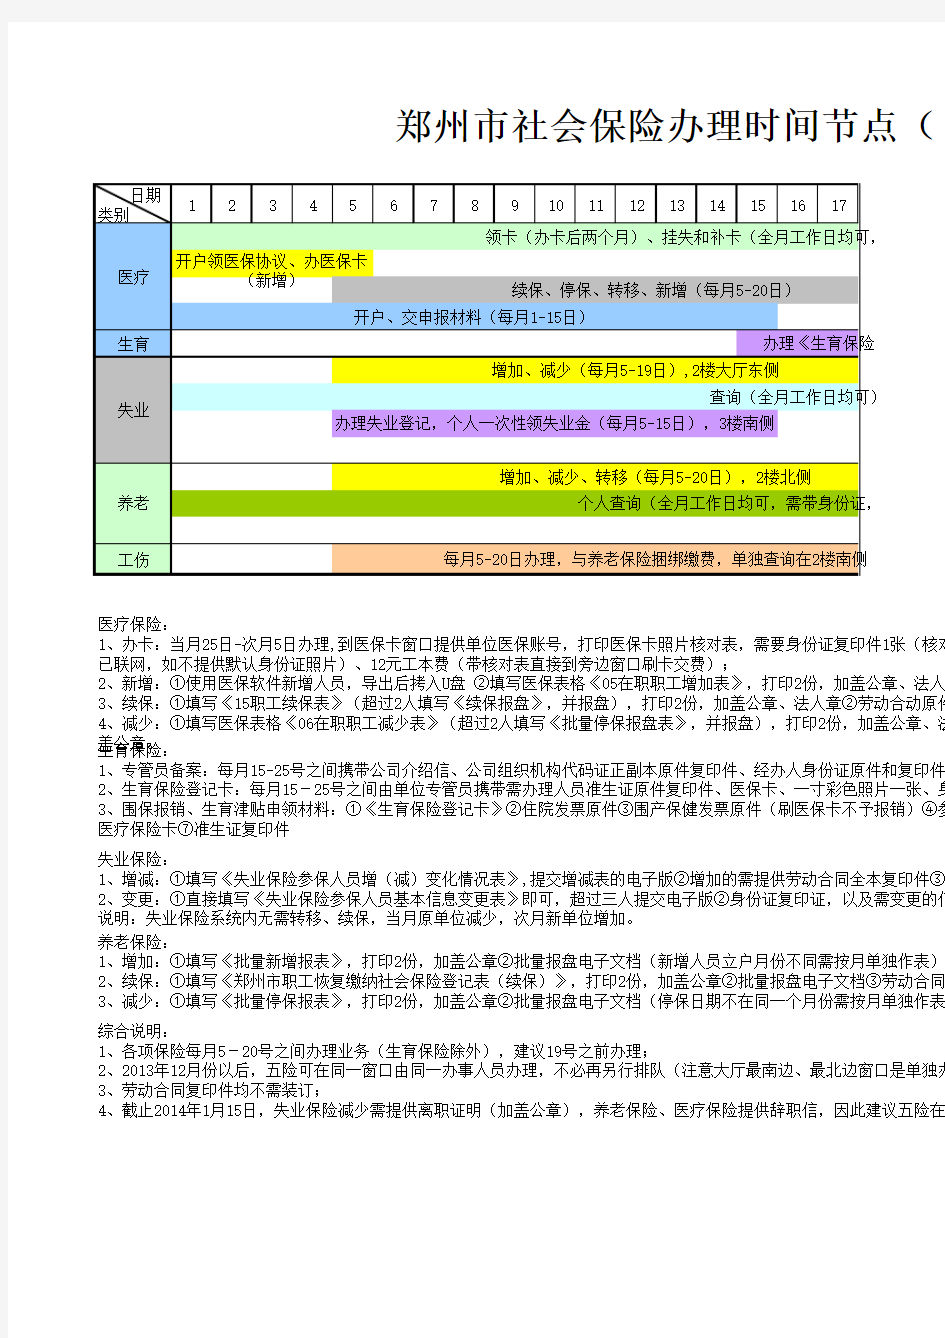 郑州市社保办理时间节点及指南2014